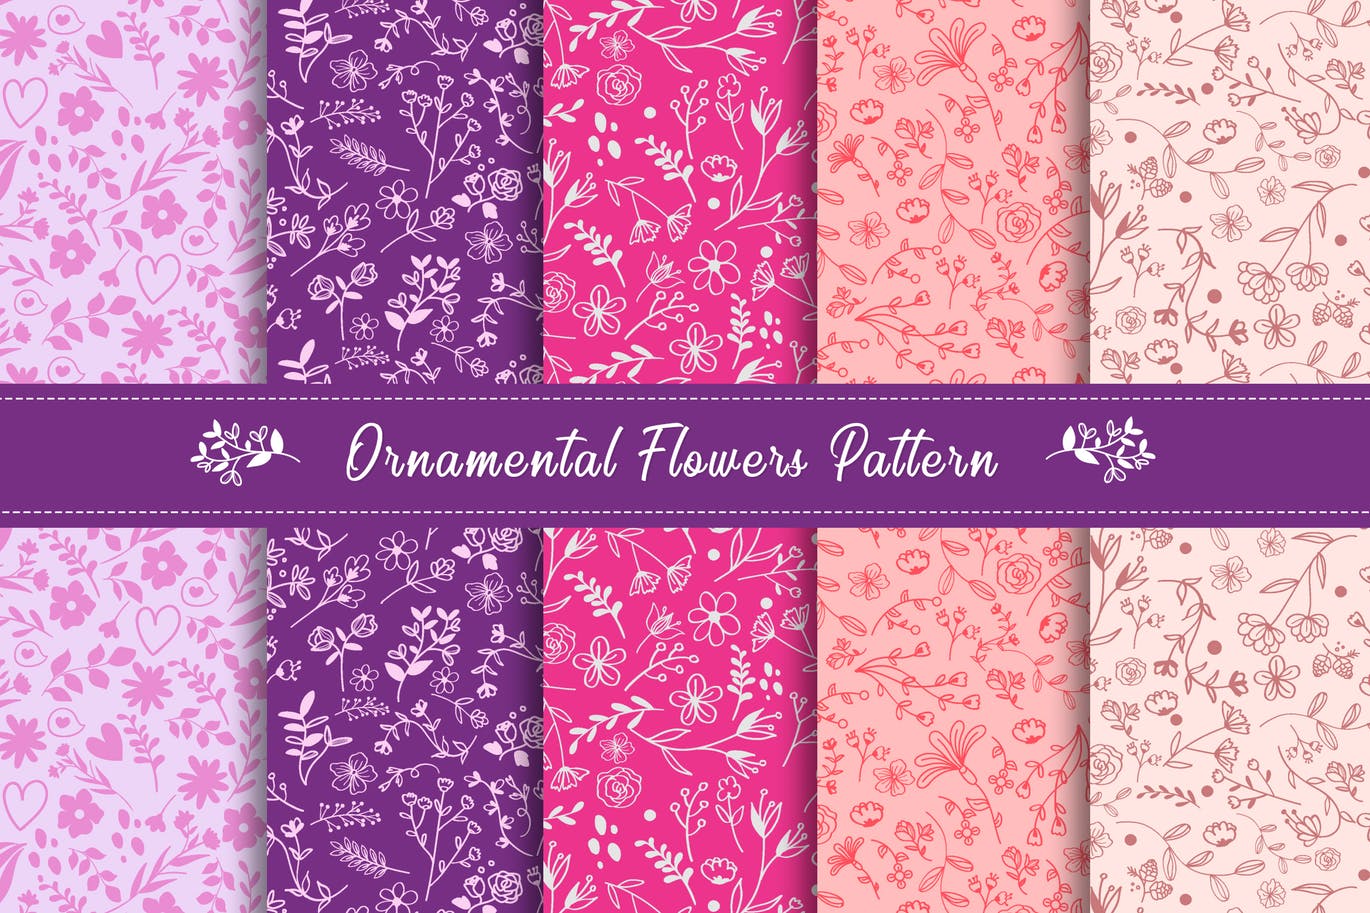 棉料布匹植物花卉印花图案纹样纹理素材 Ornamental Flowers Pattern Collection插图